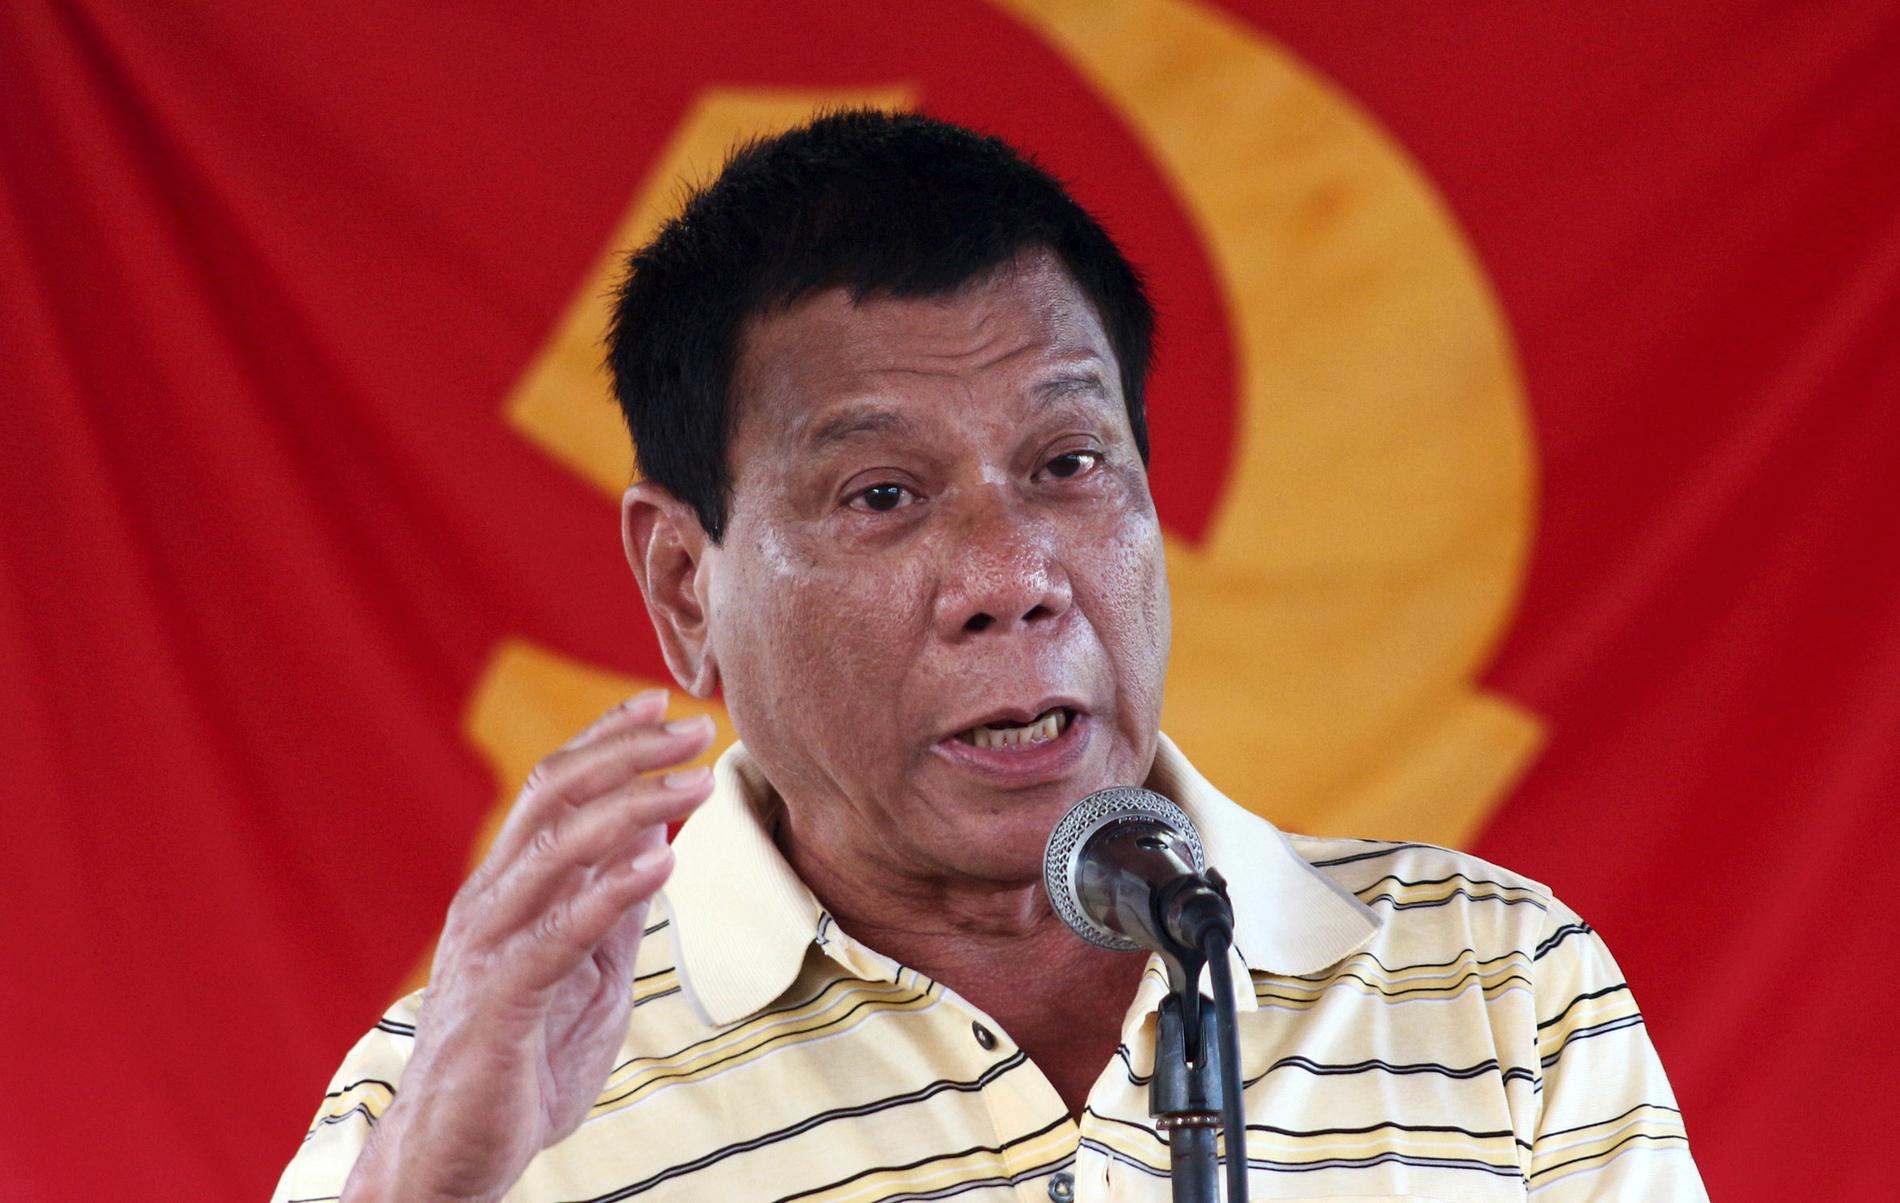 VALGVINNER: Rodrigo Duterte har kommet med en rekke kontroversielle uttalelser under valgkampen, blant annet har han kalt paven for en horunge. Men for Filippinenes muslimske befolkning har han fremstått som en støttespiller. Foto: Keith Bacongco / Reuters / NTB scanpix